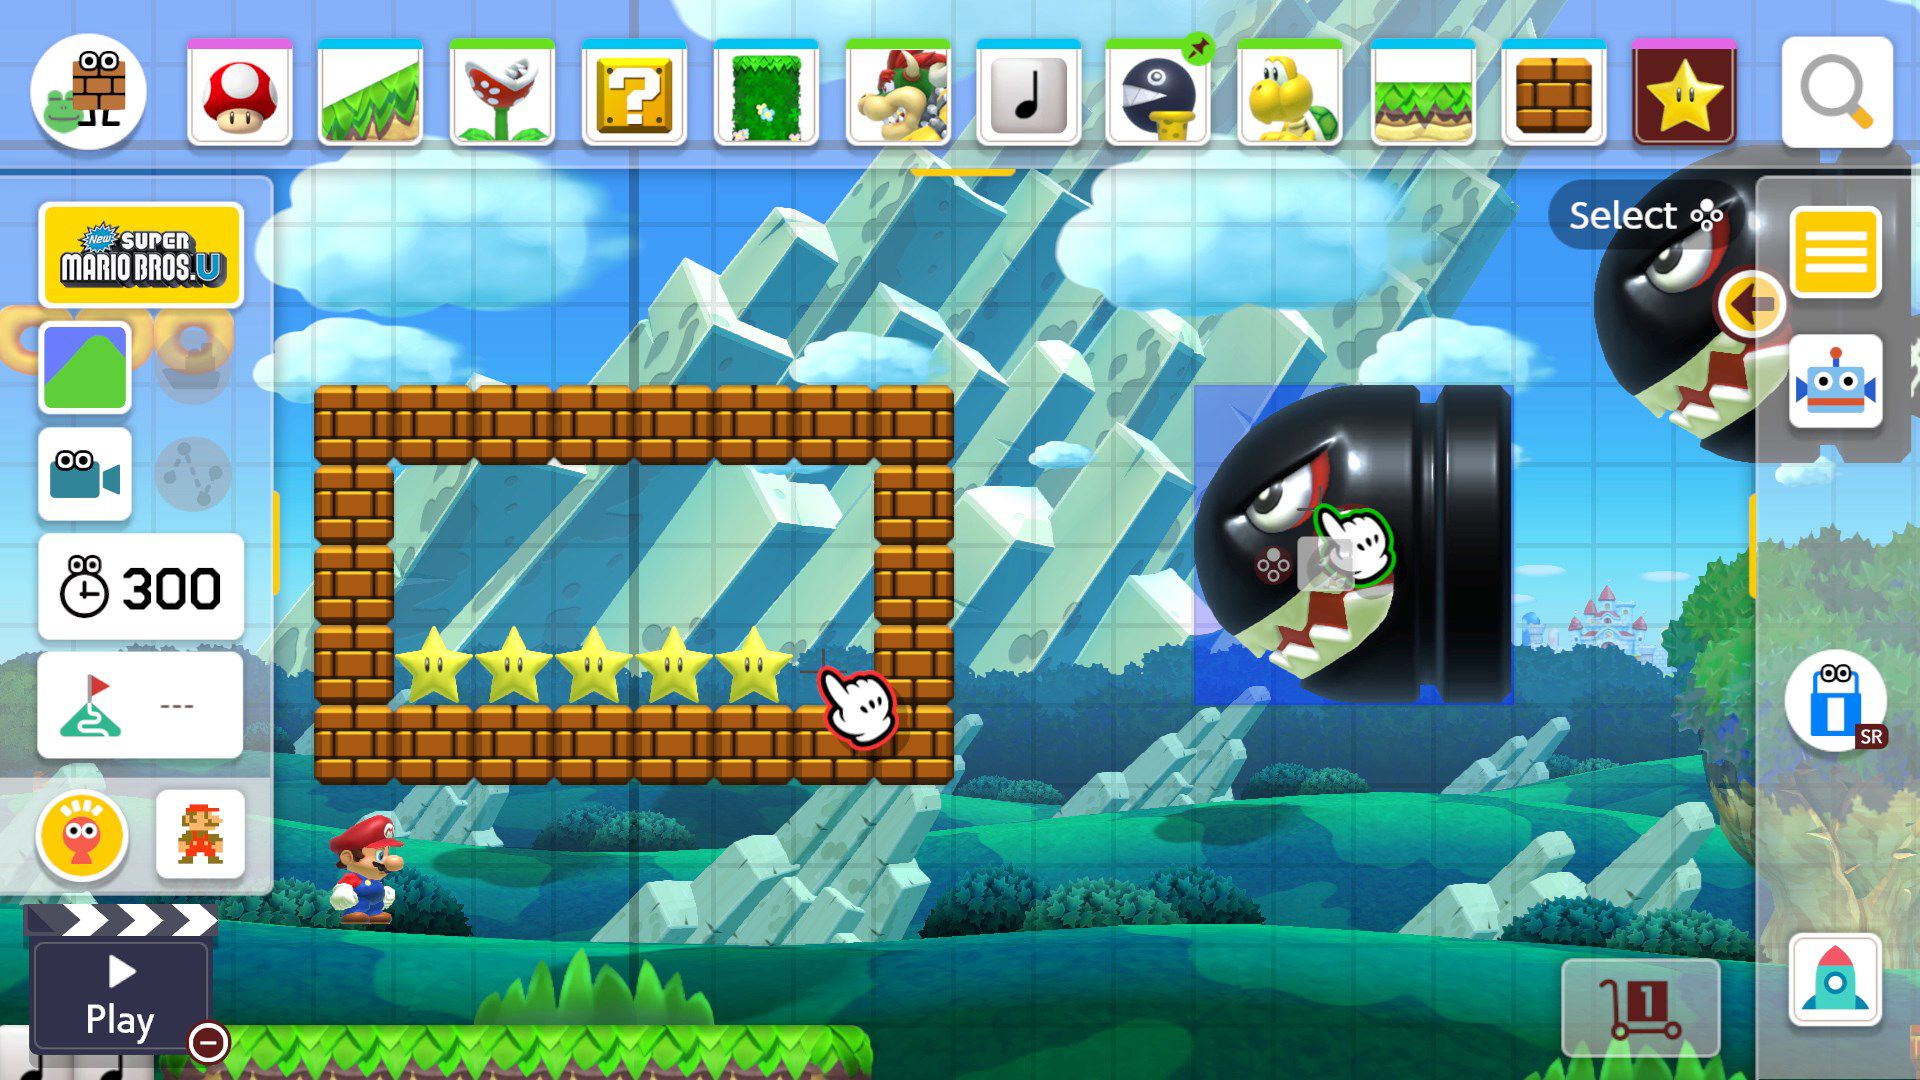 création d'un niveau dans Super Mario Maker 2 avec un Banzai Bill visant un rectangle de briques avec des étoiles d'invincibilité à l'intérieur